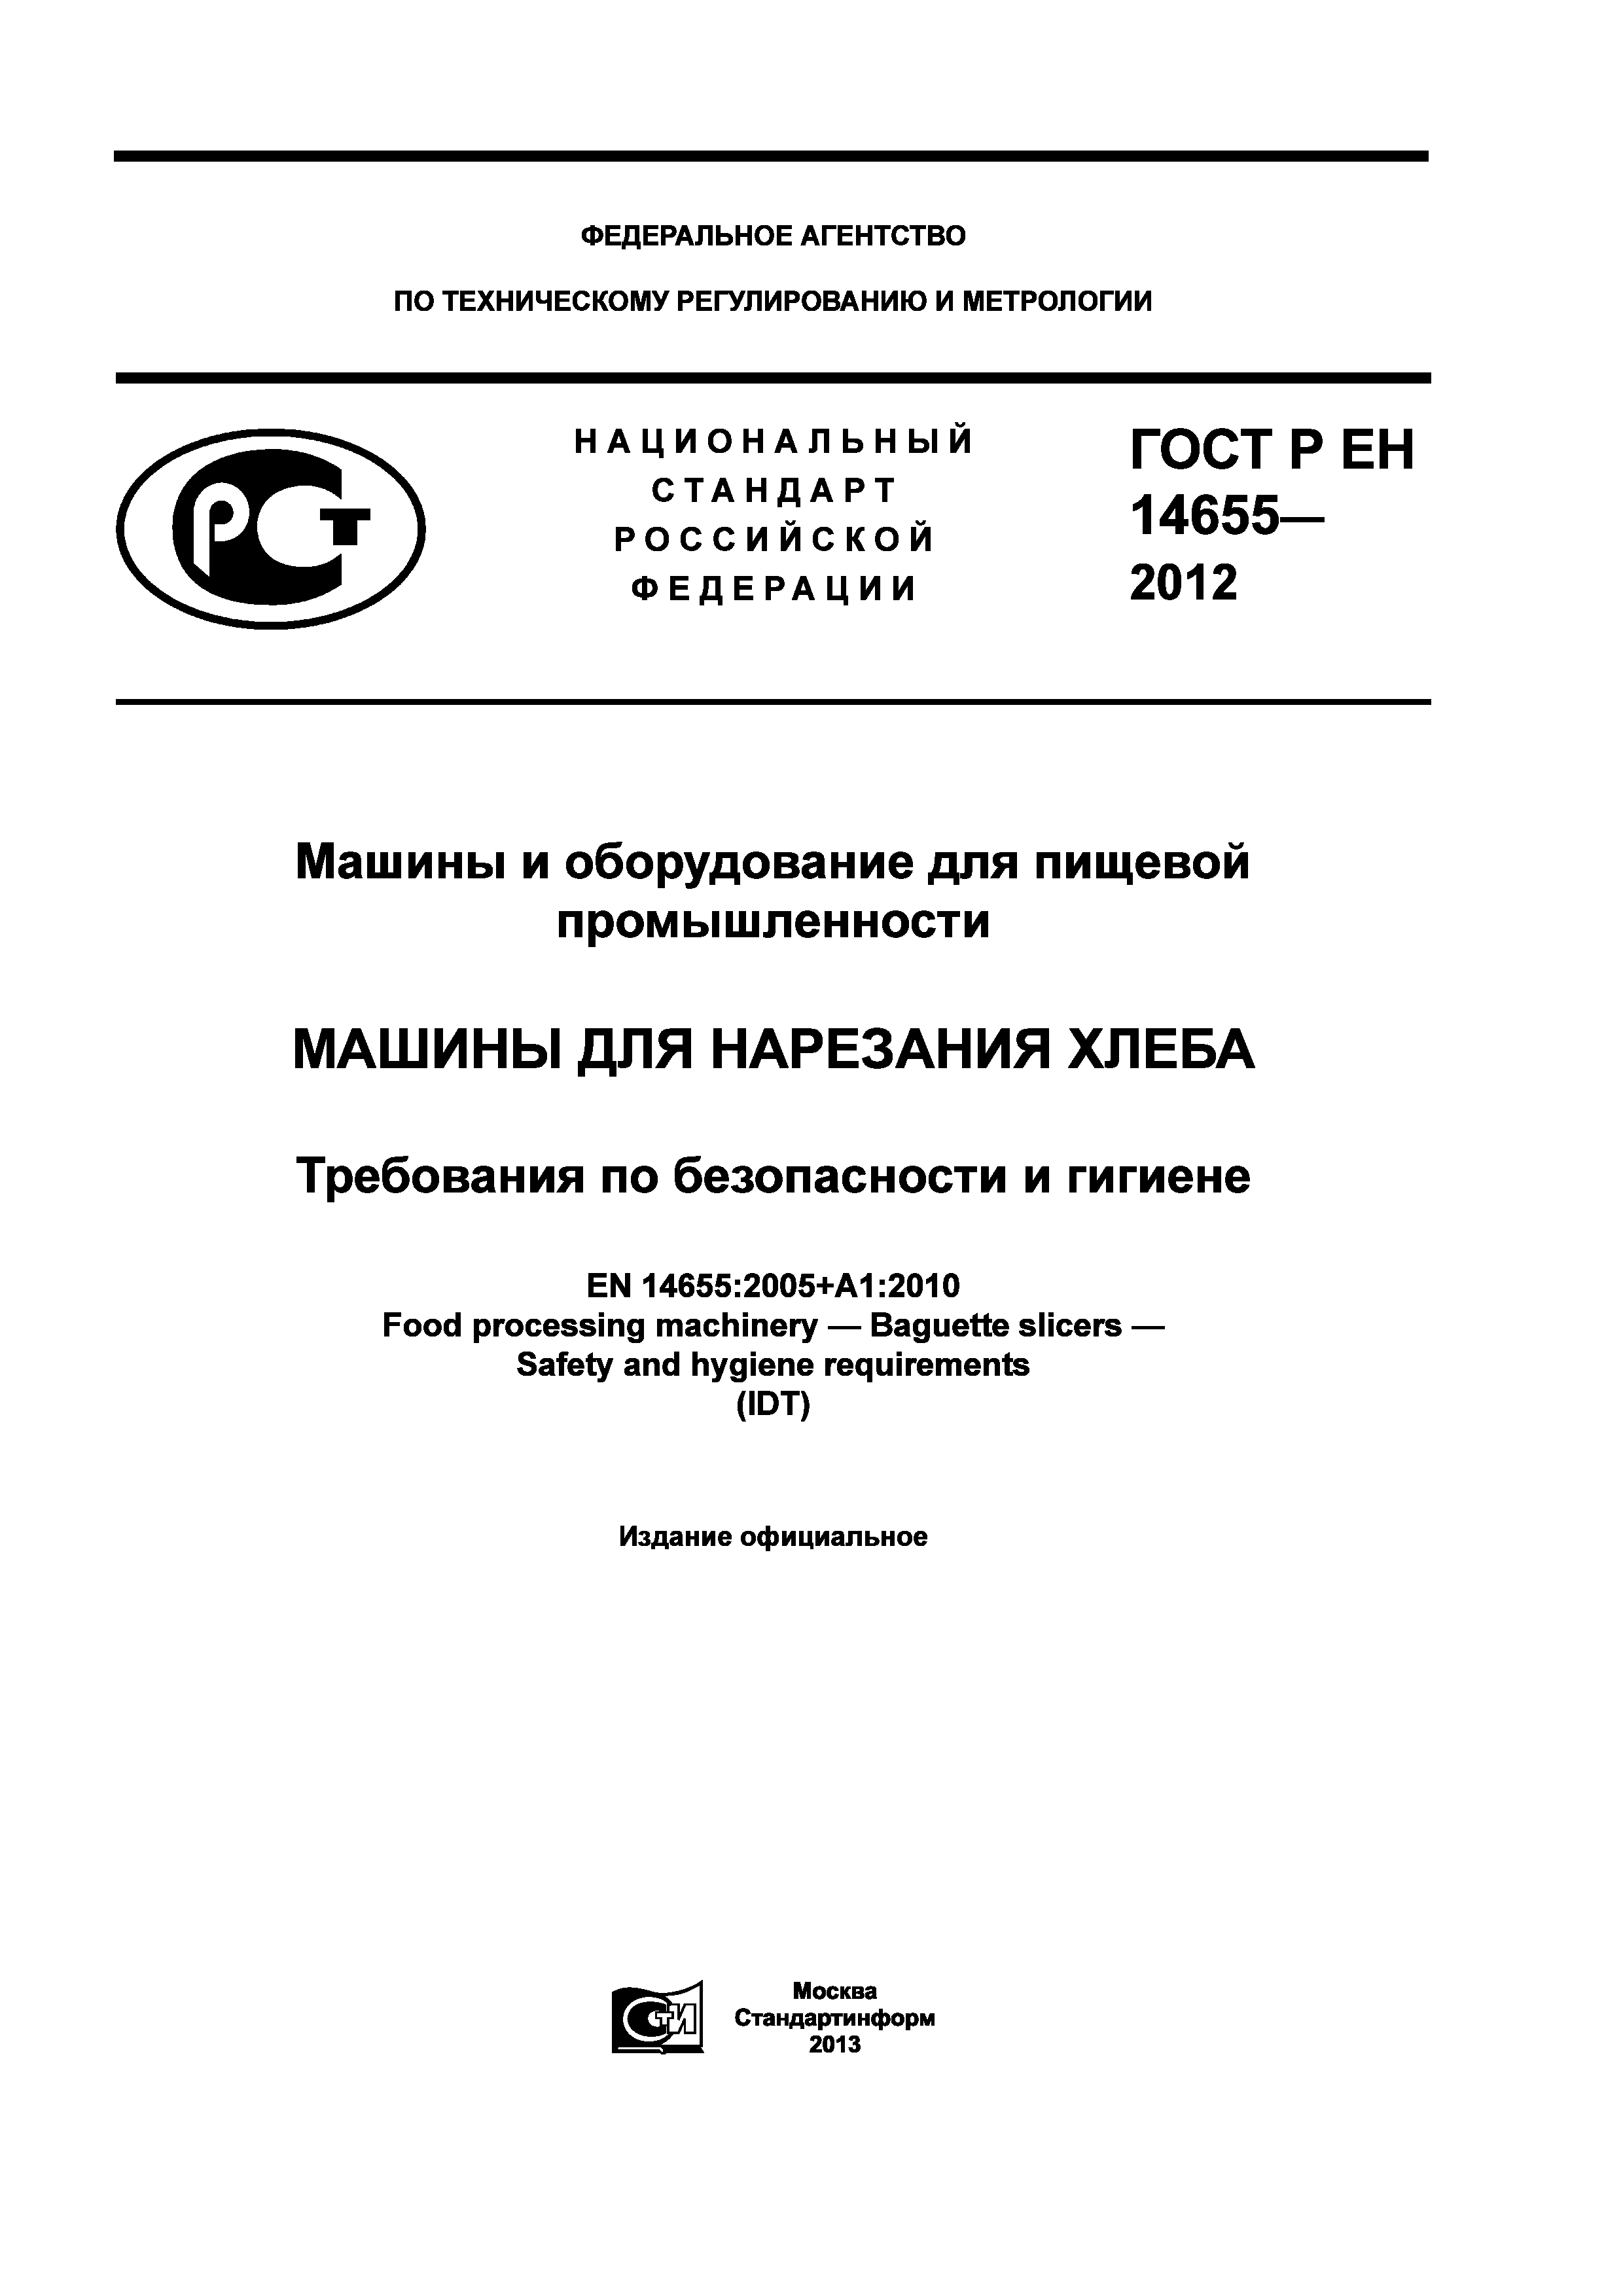 ГОСТ Р ЕН 14655-2012